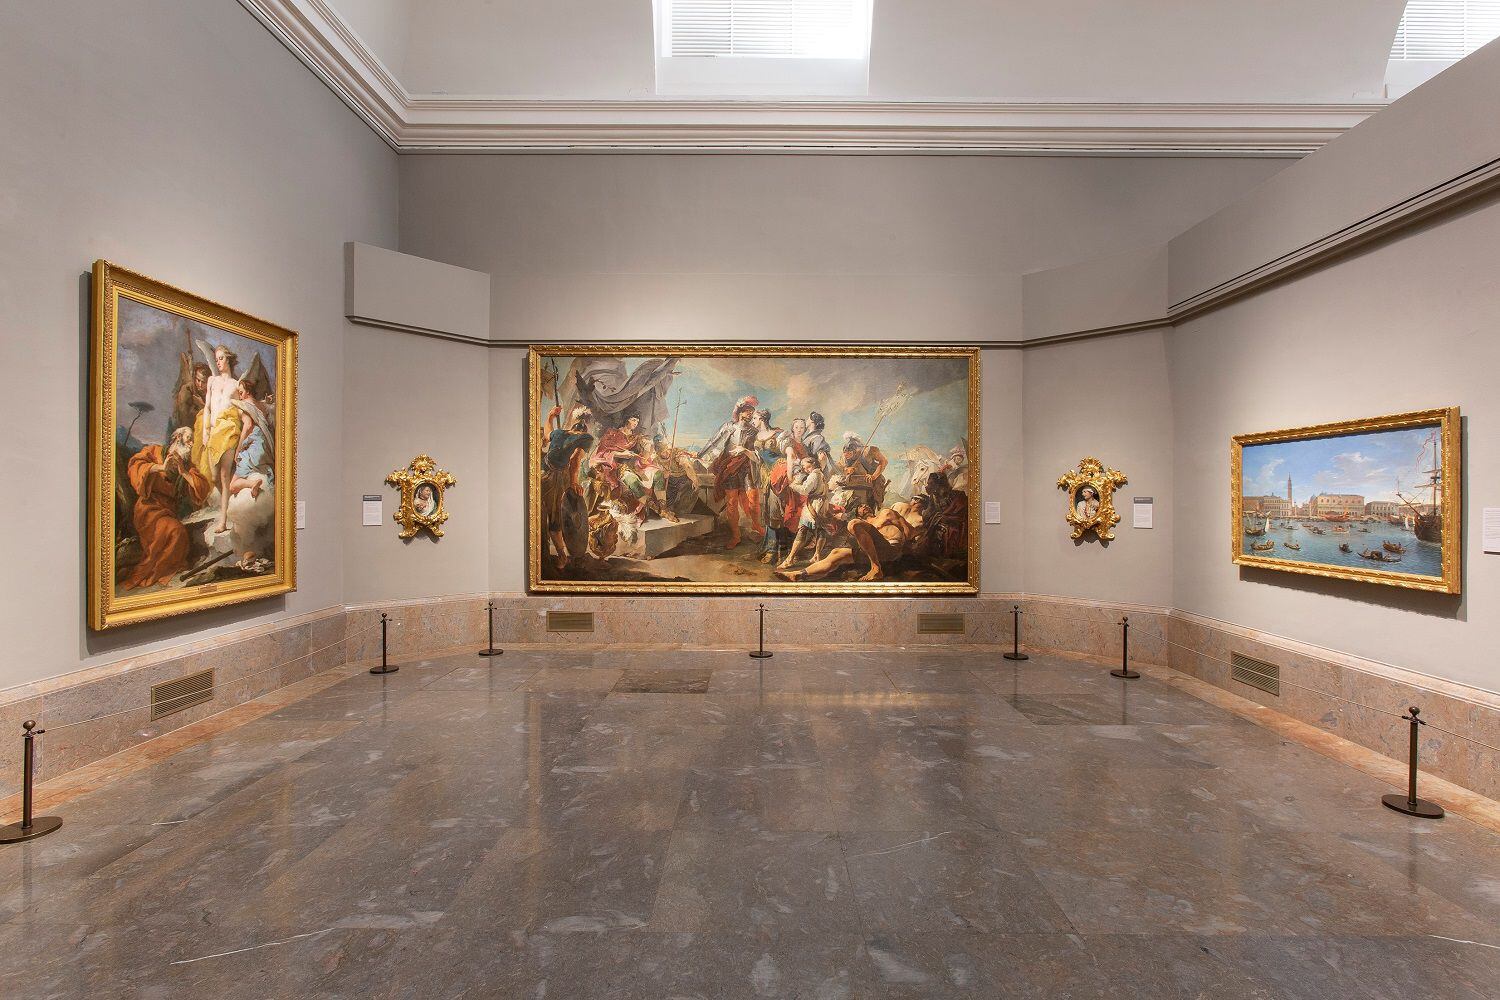 El Museo del Prado renueva las salas dedicadas al arte europeo del siglo XVIII, con una nueva propuesta que incluye objetos de artes decorativas y esculturas, con el objetivo de ofrecer al espectador una visita "más panorámica, completa y sugestiva" al arte de la época. EFE/Foto cedida